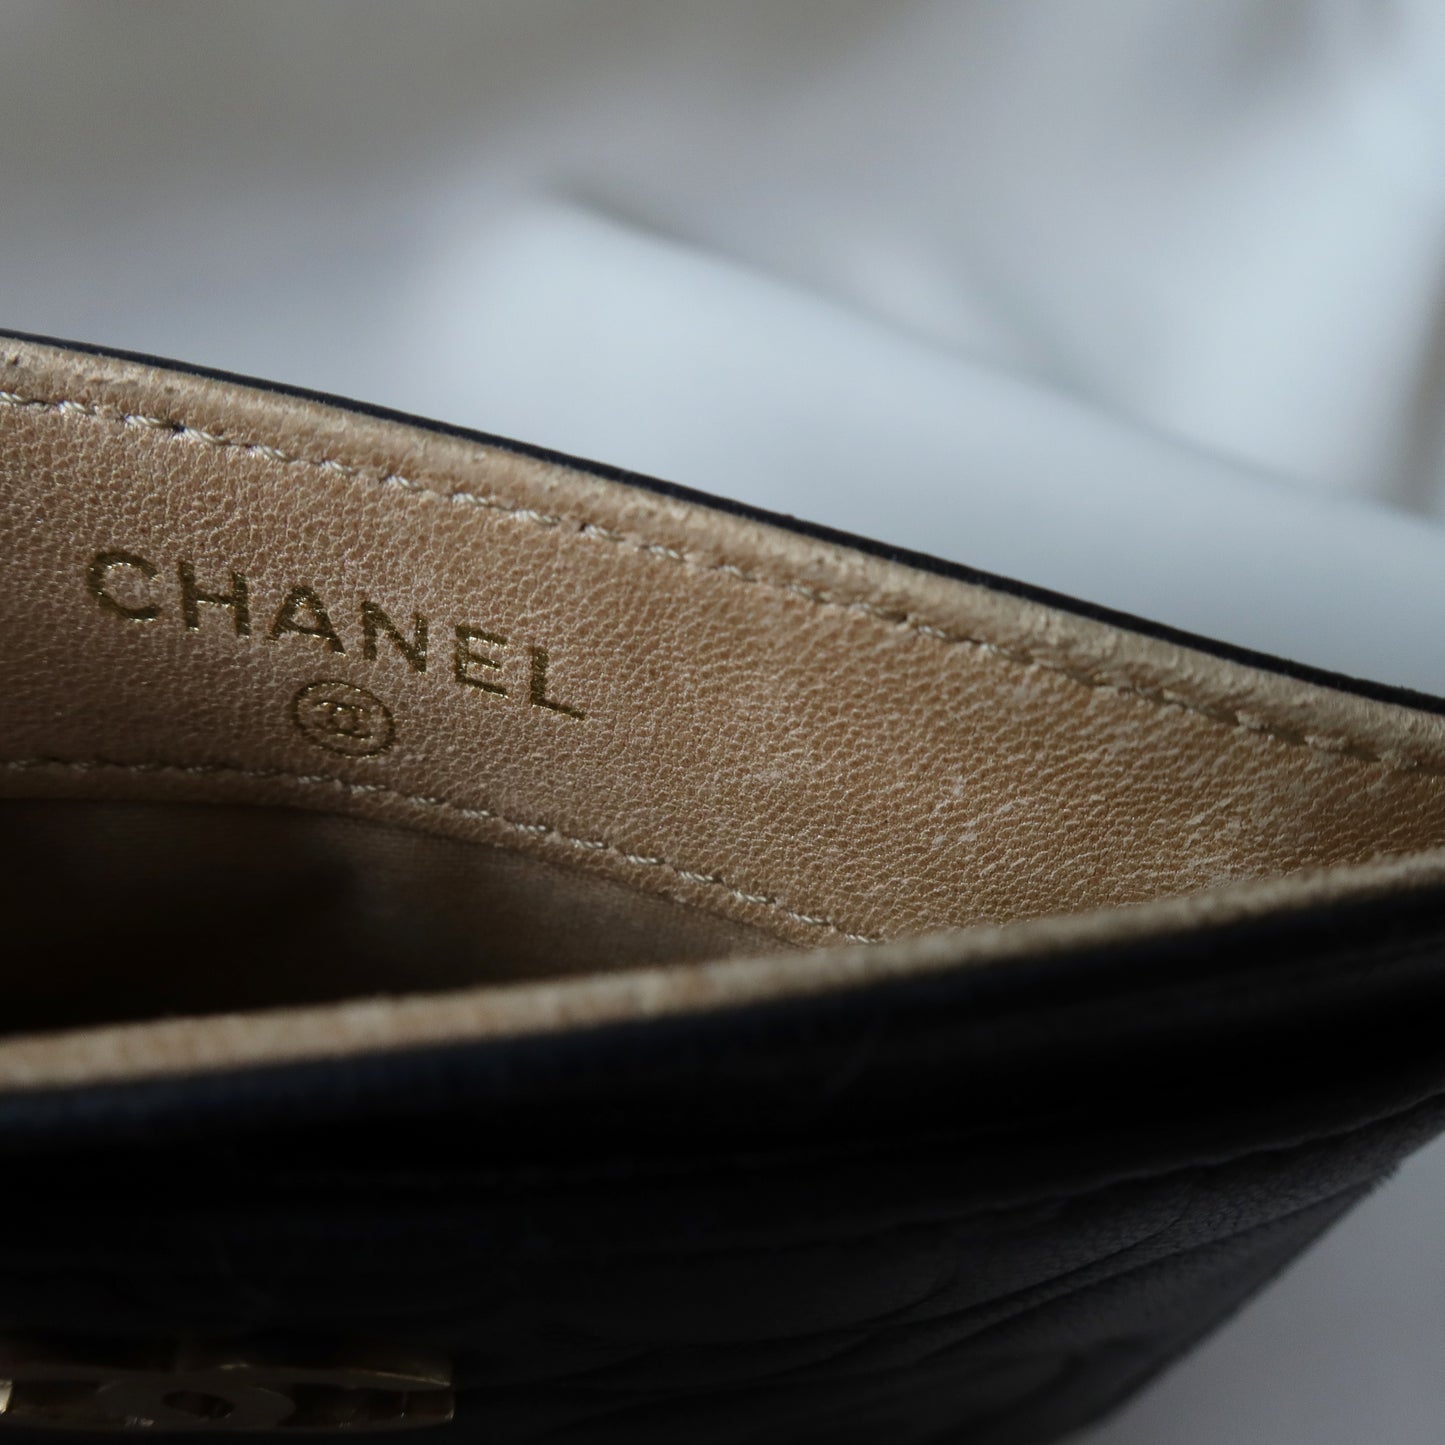 Chanel Vintage Camellia Black Lambskin Leather Card Holder Case